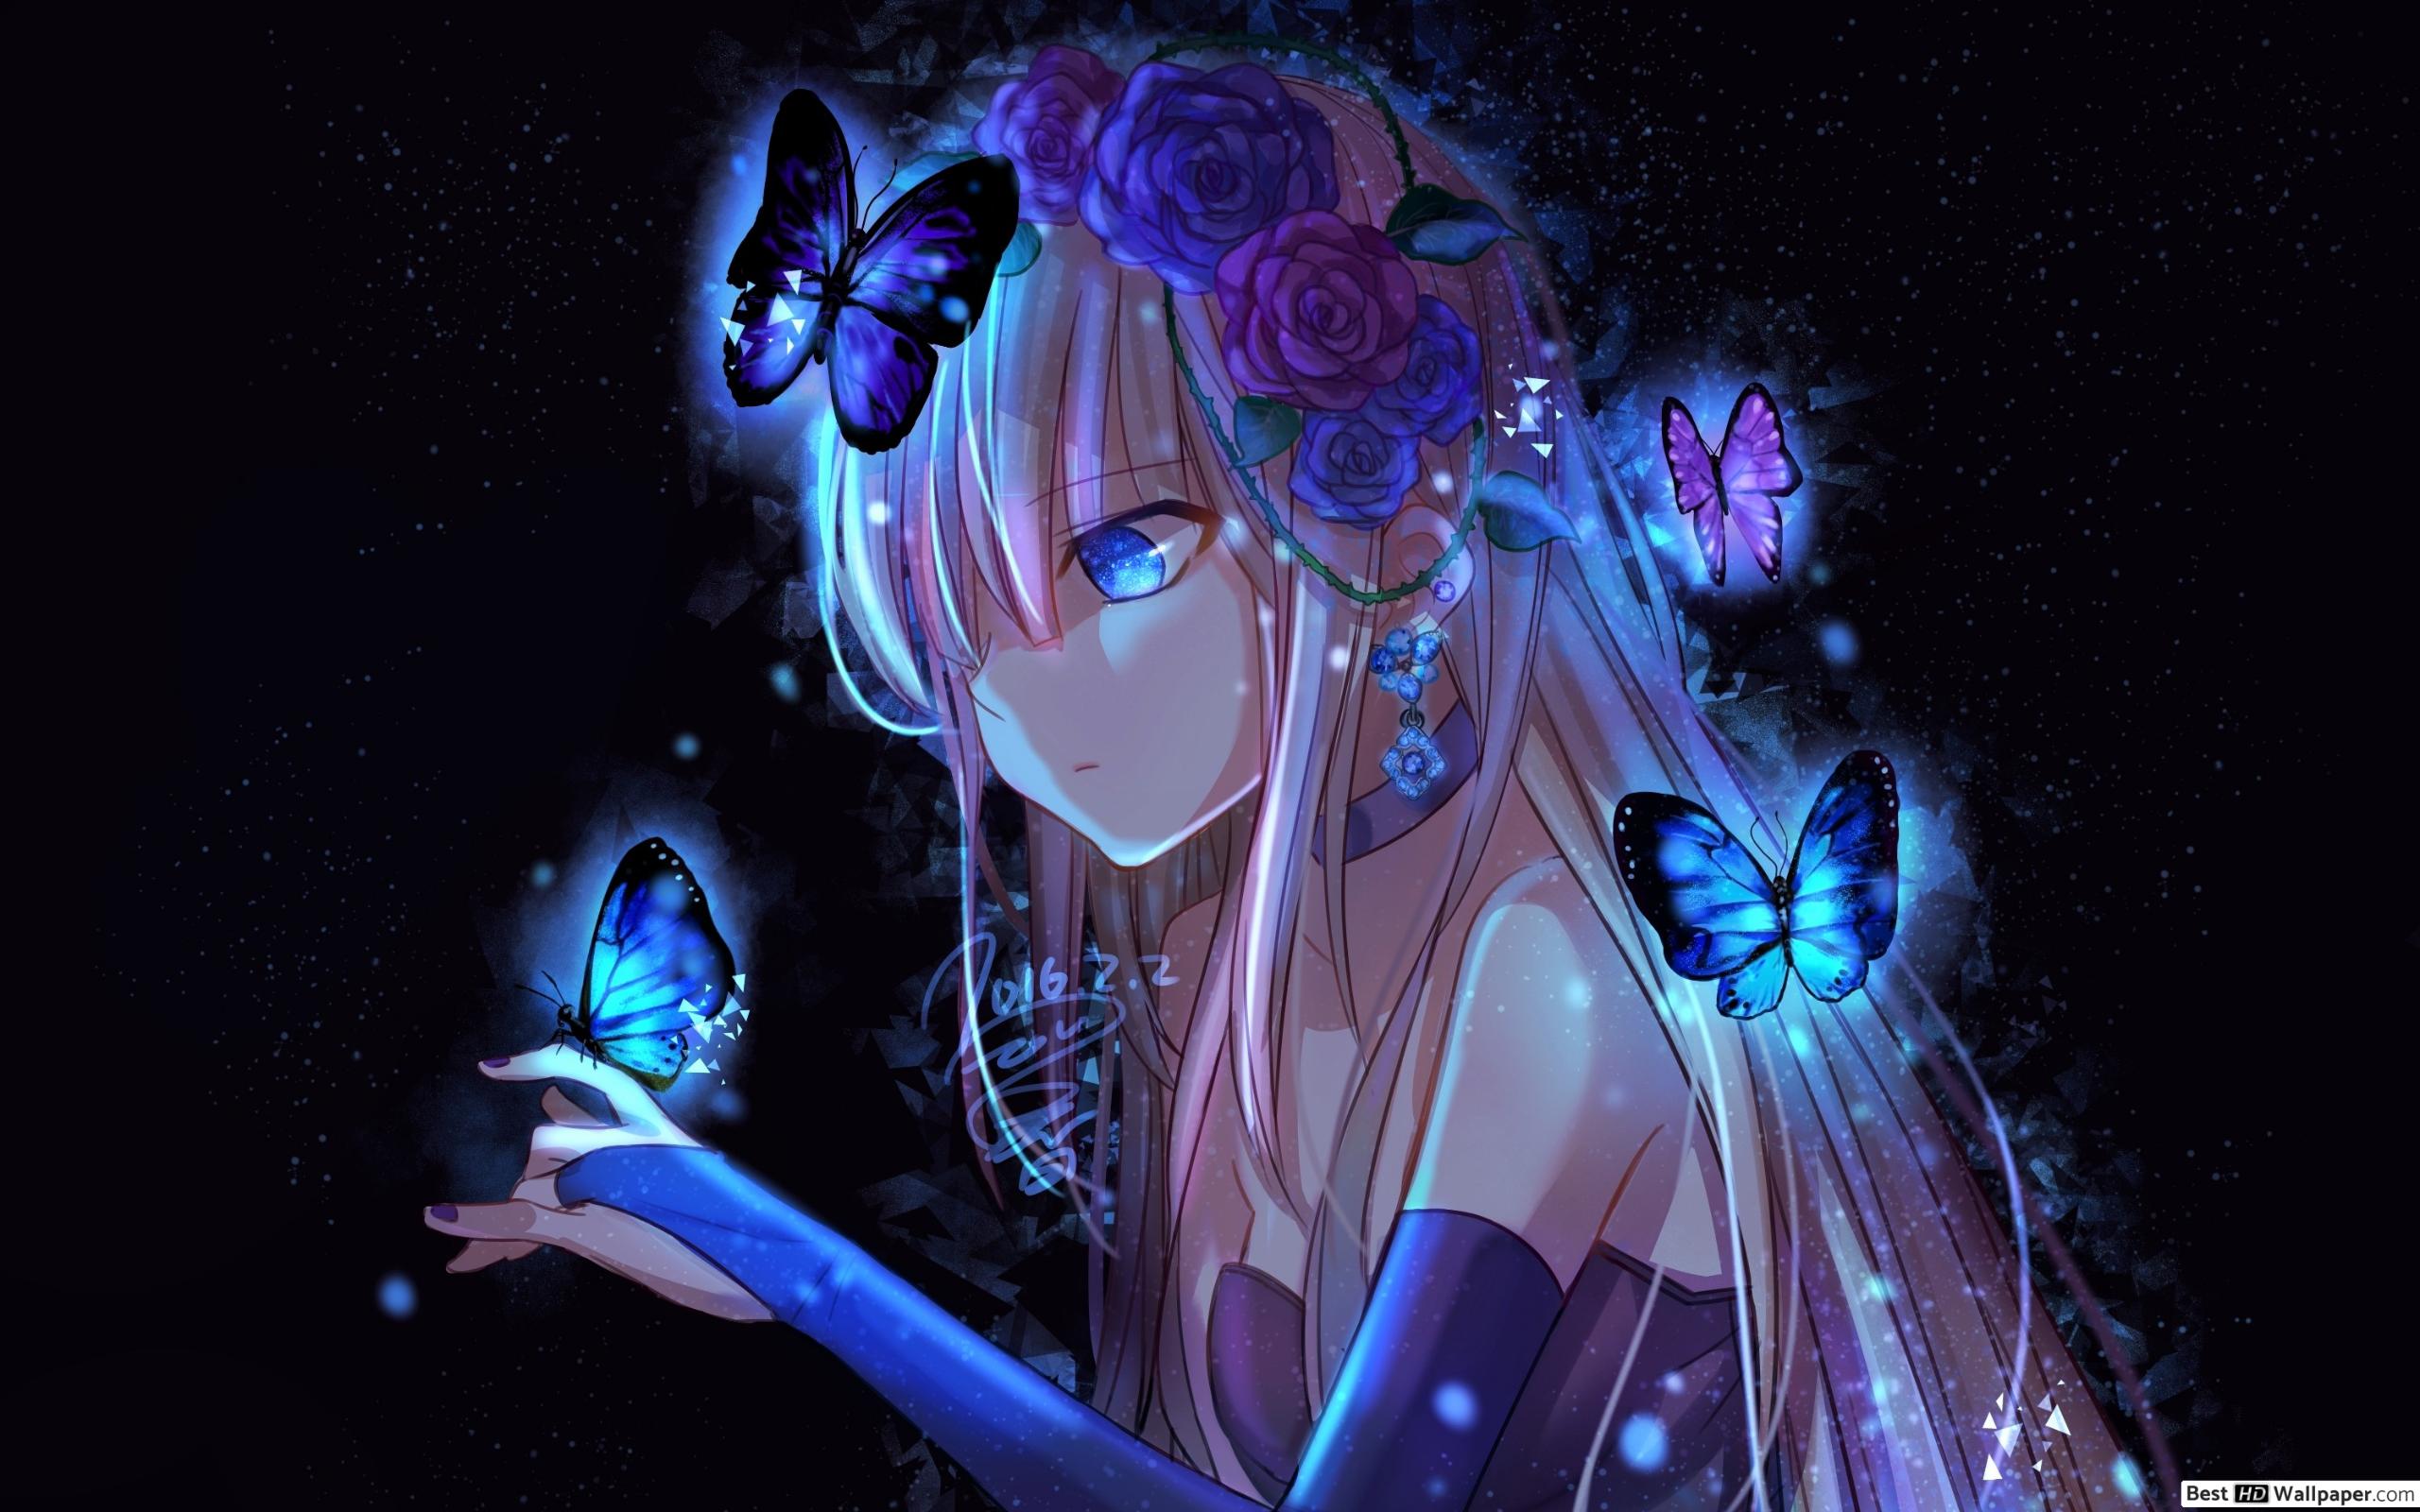 Anime Blue Girl Wallpaper Free Anime Blue Girl Background